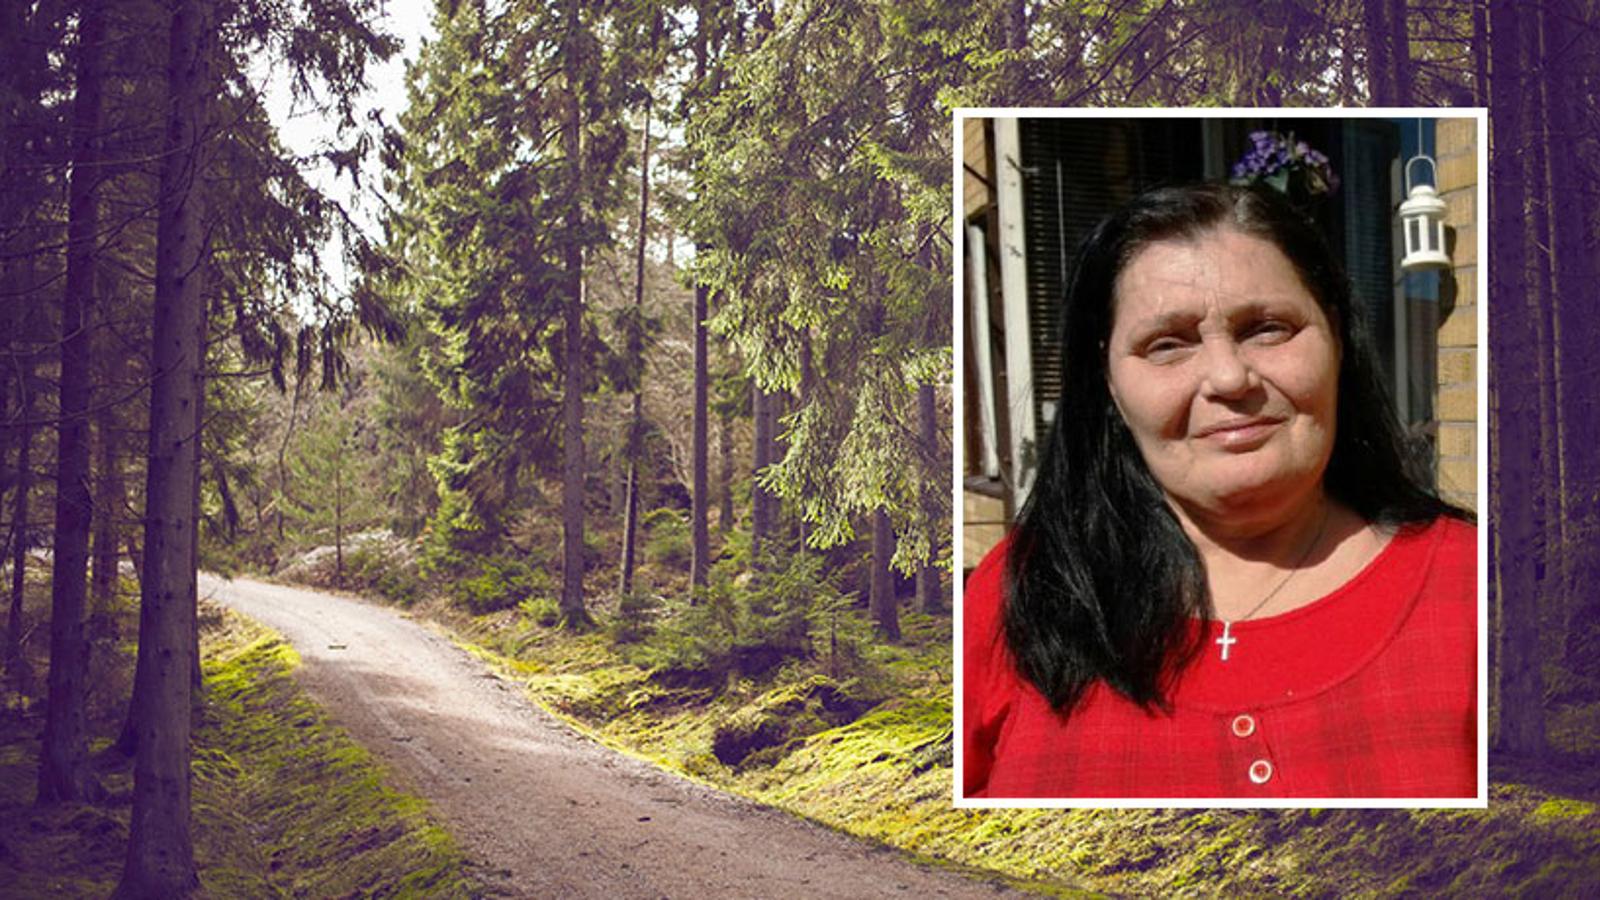 Till vänster: En stig av grus i skogen. Till höger: Porträttbild av Catharina Gustafsson.